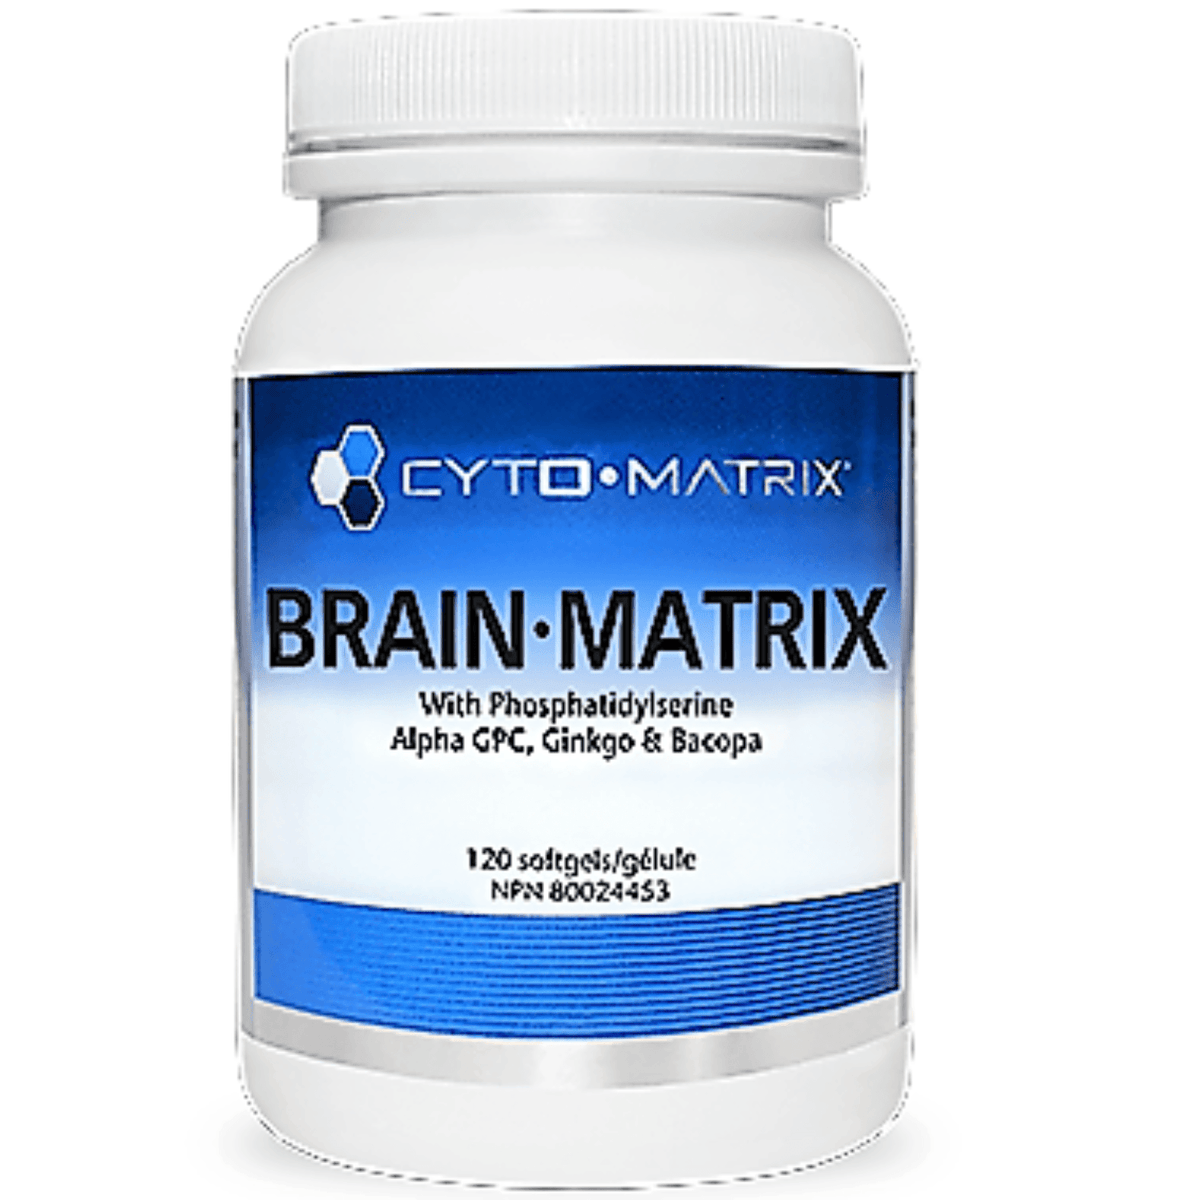 Cyto-Matrix Brain-Matrix 120 SoftGels Supplements - Cognitive Health at Village Vitamin Store